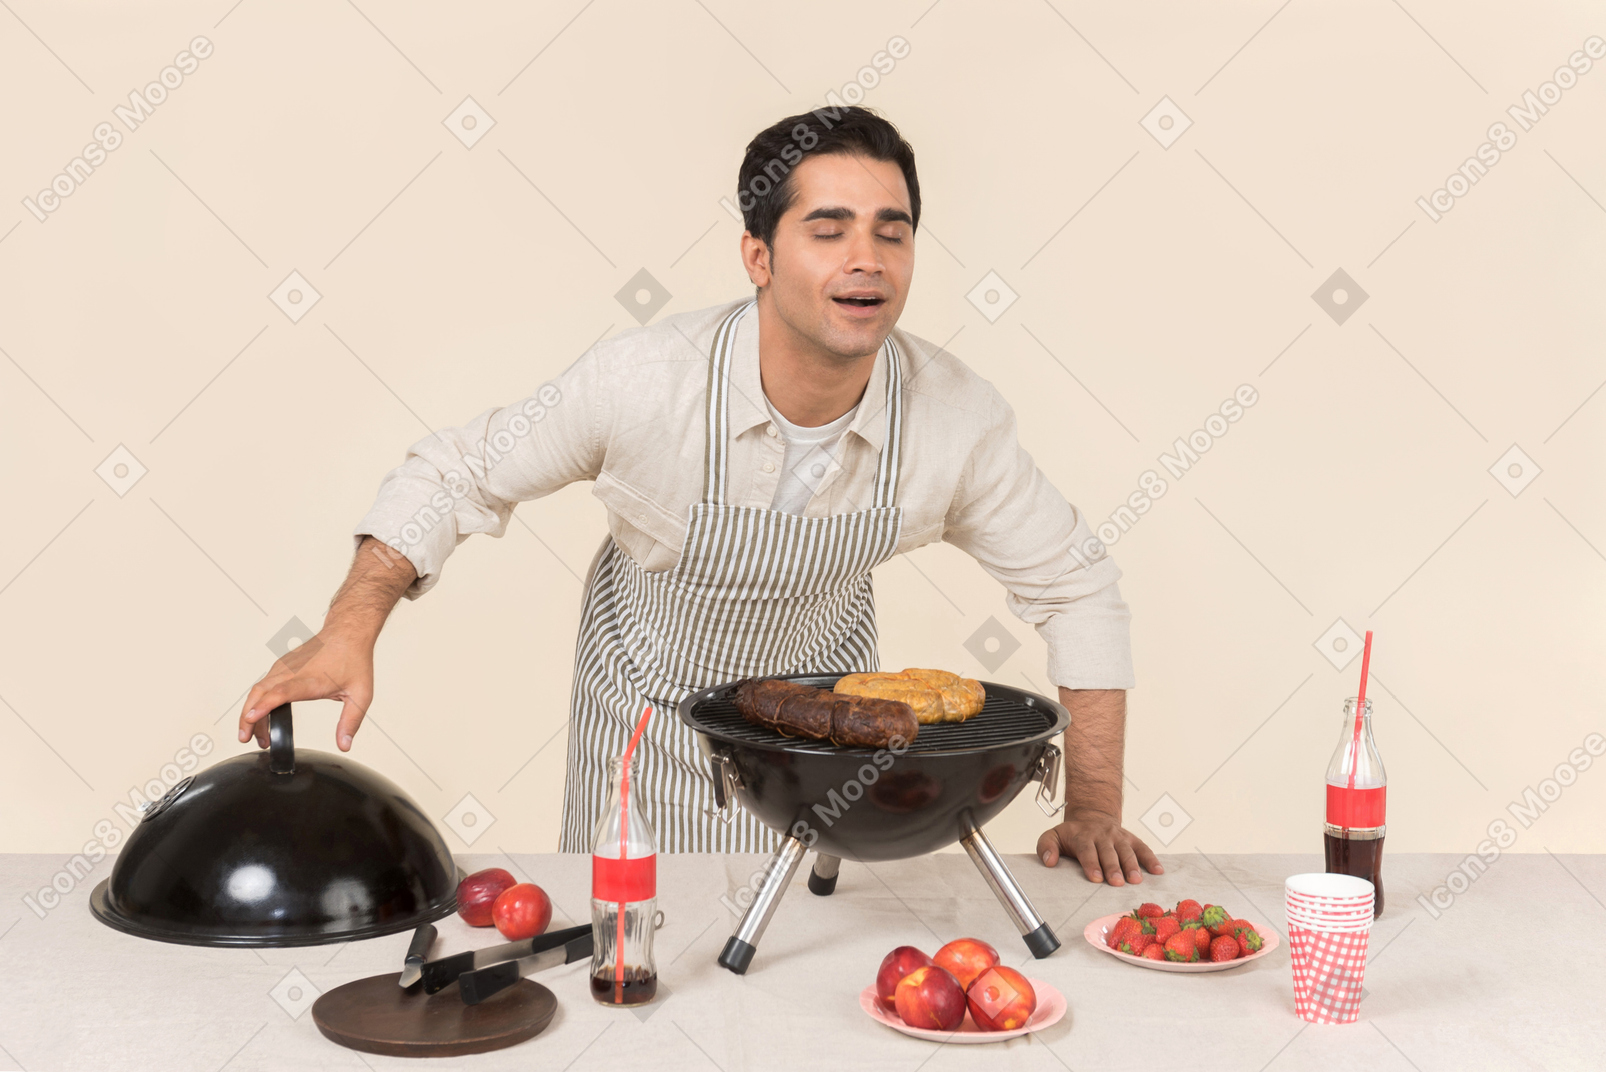 Hombre caucásico joven que huele a barbacoa está cocinando